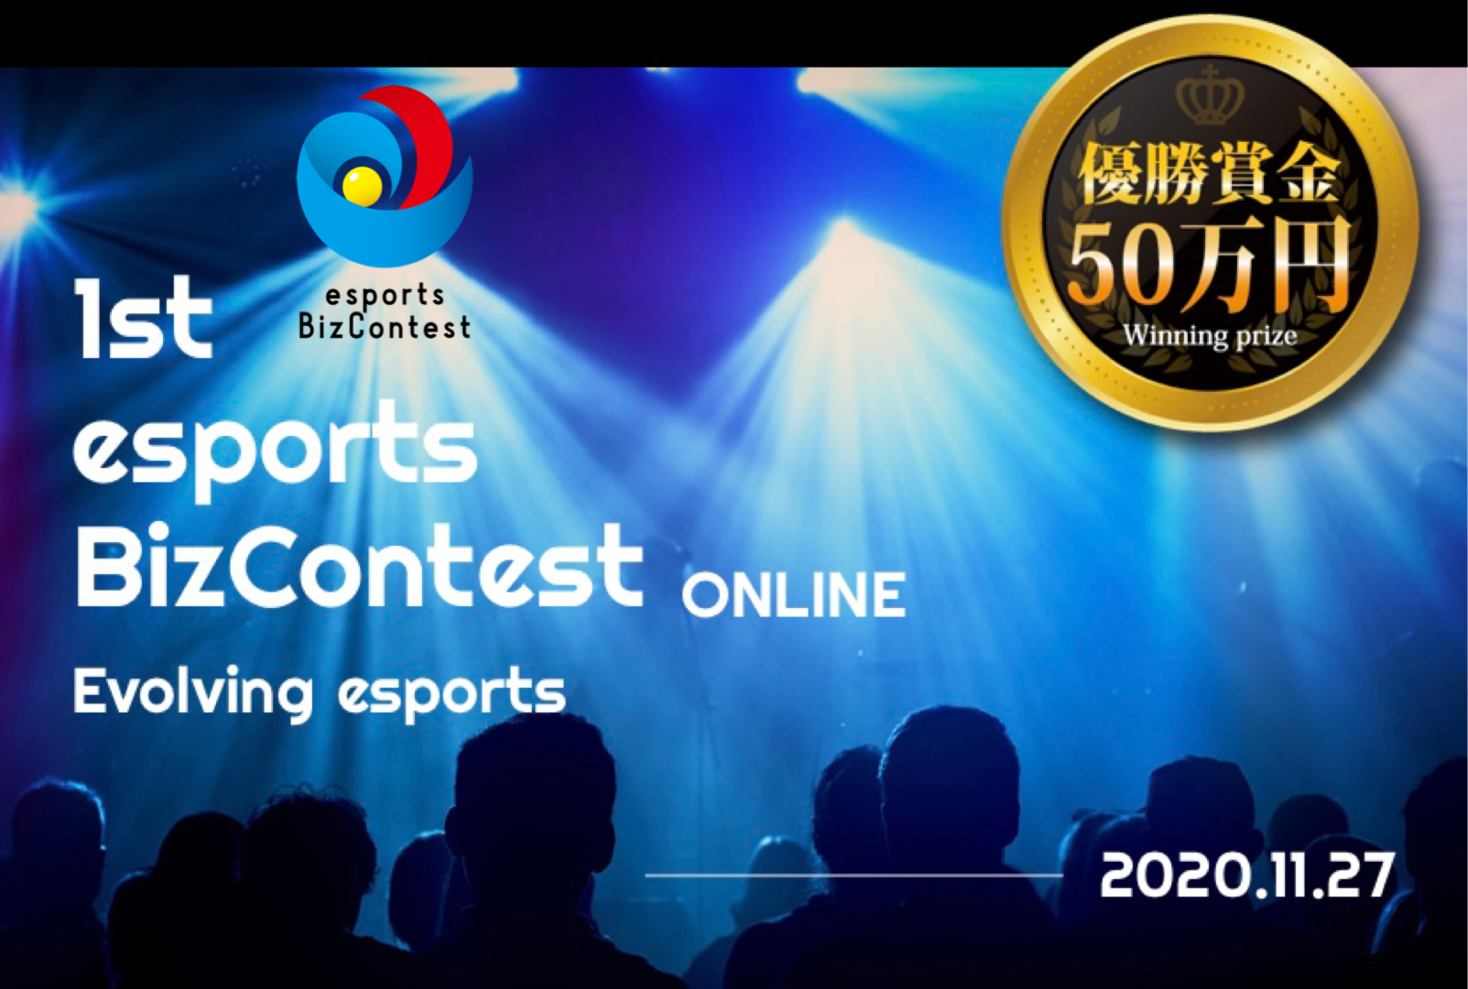 日本初のｅスポーツ特化型ビジネスコンテスト Esports Biz Contest Evolving Esports が始動 株式会社cs Entertainmentのプレスリリース